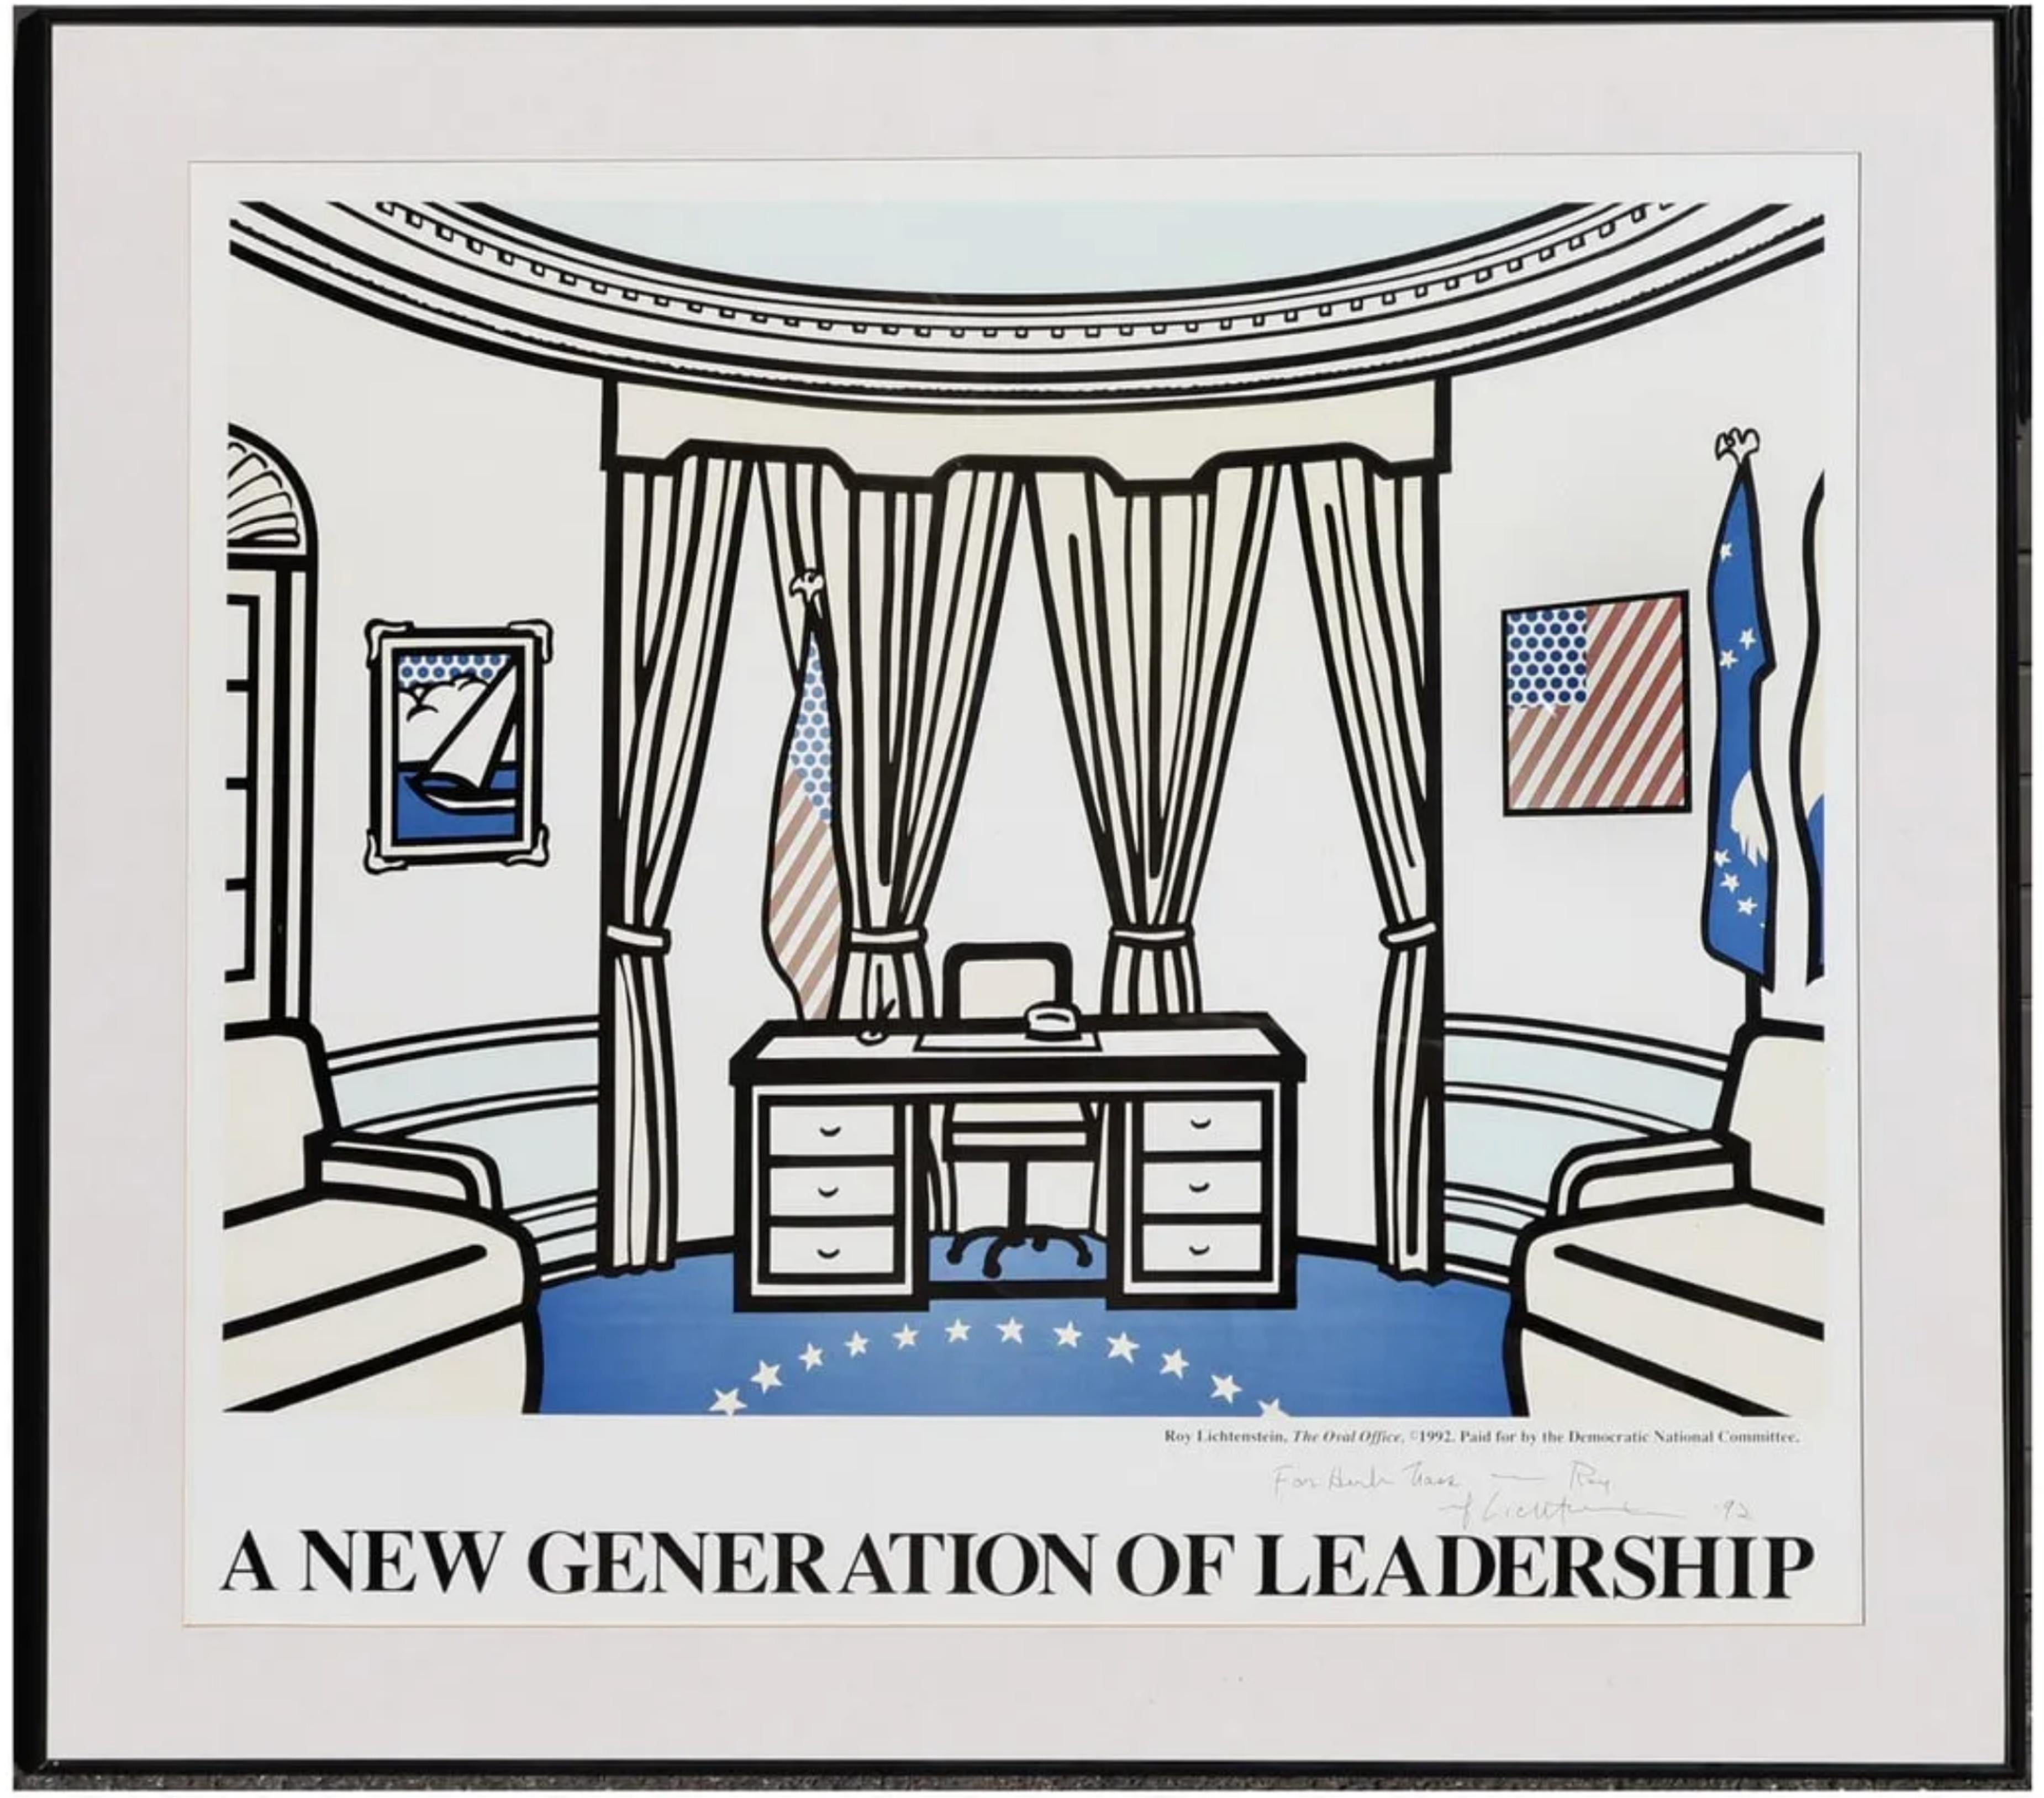 Roy Lichtenstein
The Oval Office (signé, daté et inscrit par Roy Lichtenstein), 1992
Lithographie offset en couleurs (signée à la main et portant une inscription à l'attention d'un célèbre avocat spécialisé dans les successions)
Édition de 500